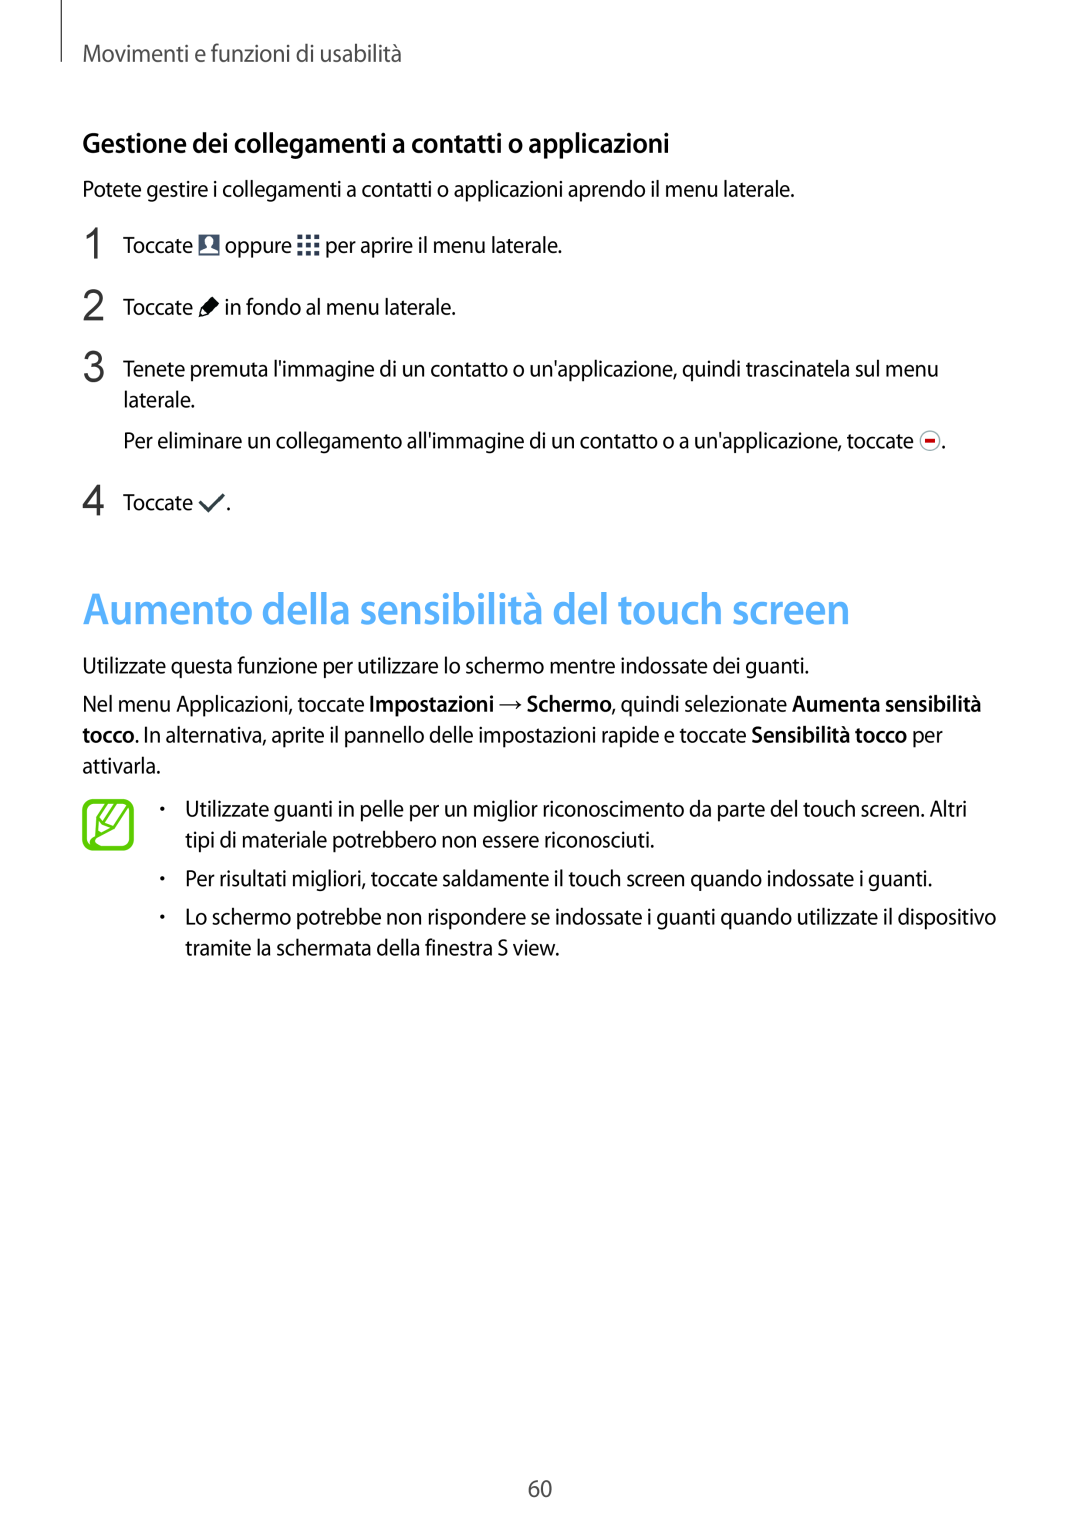 Samsung SM-G900FZKADBT Aumento della sensibilità del touch screen, Gestione dei collegamenti a contatti o applicazioni 